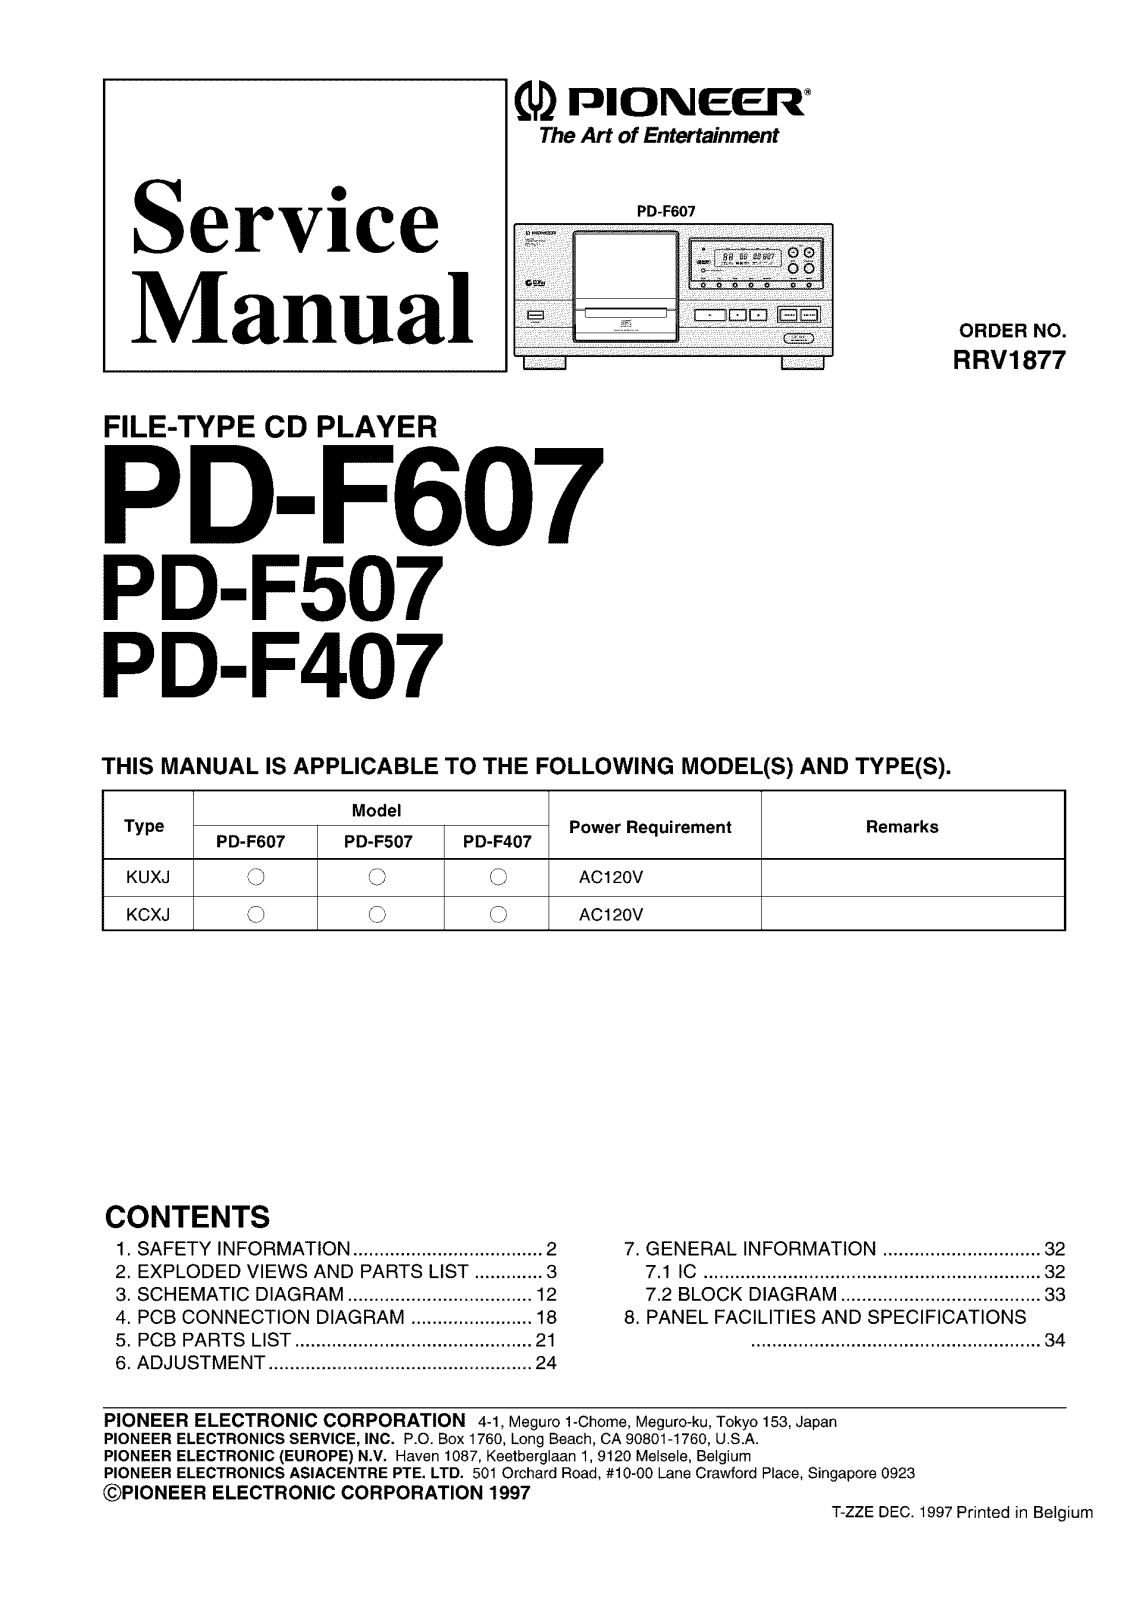 Pioneer PD-F407, F507 Service Manual